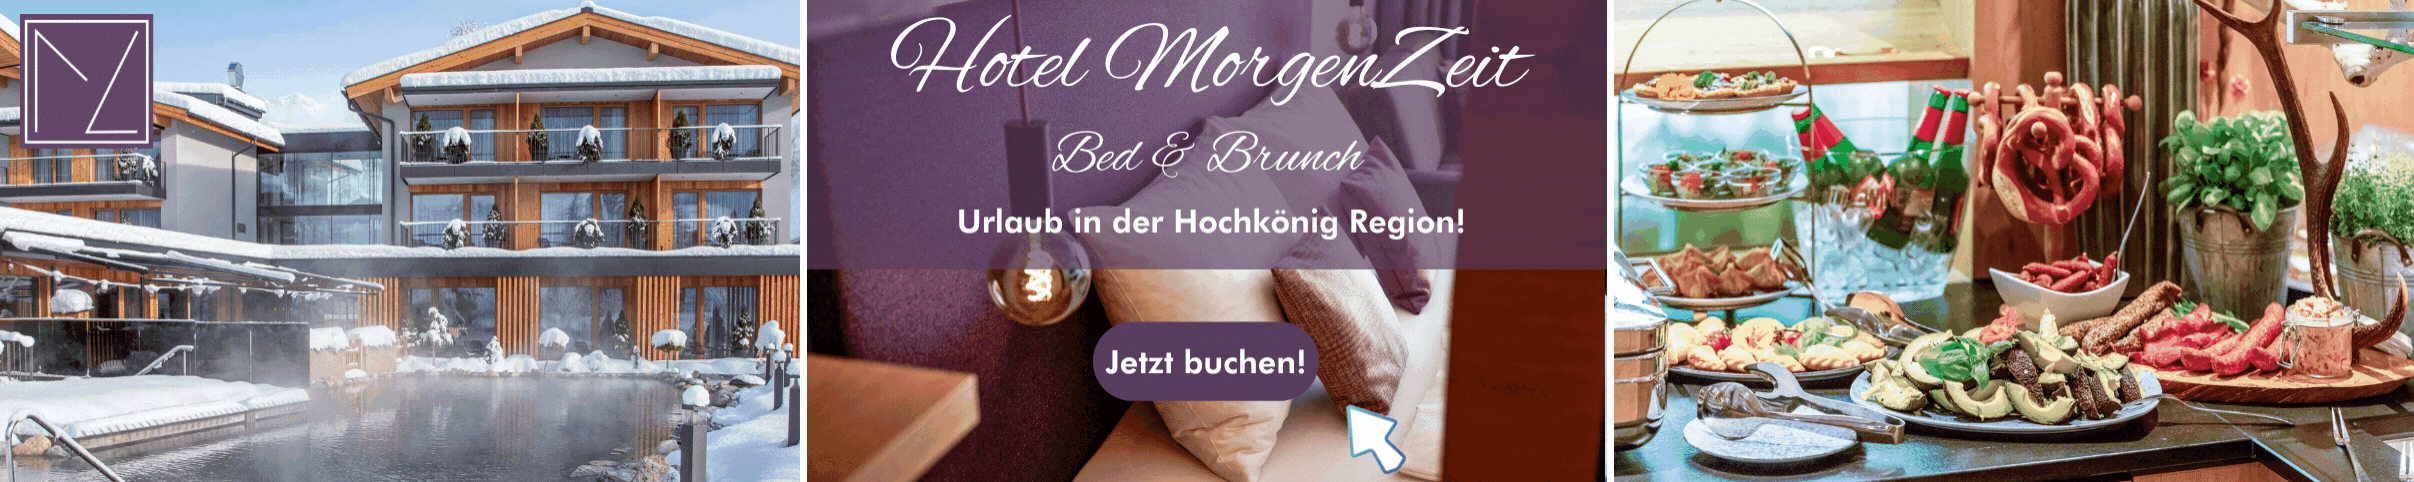 Urlaub in der Hochkönig region. Hotel MorgenZeit